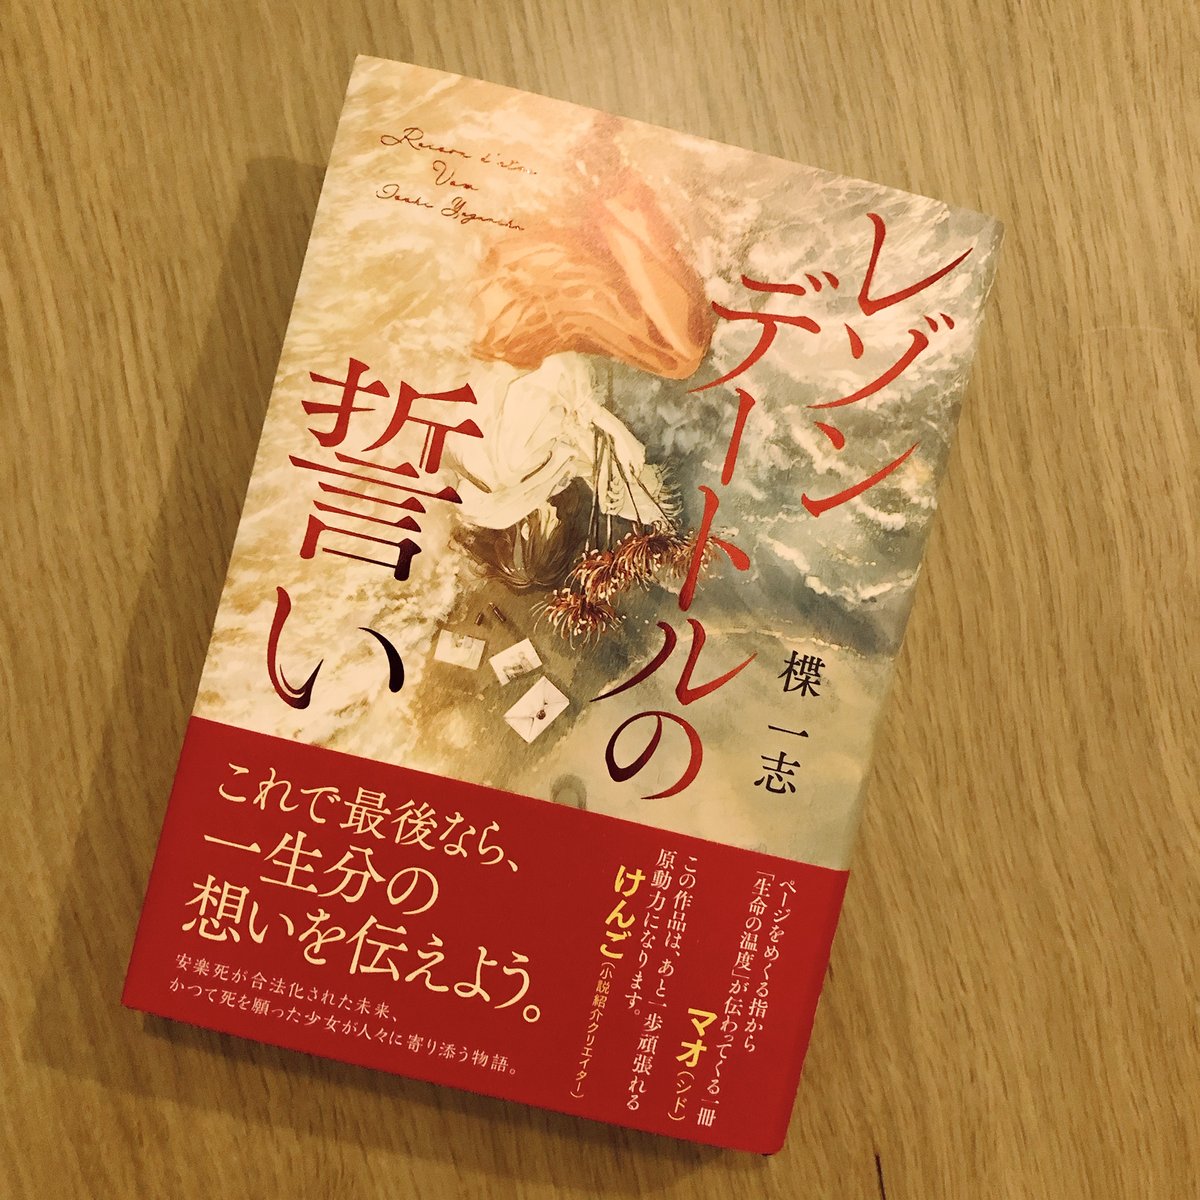 楪一志さん( @yuzuriha_isshi  )の新作『レゾンデートルの誓い』の帯付き書影公開と見本が届きました。
紅の箔押しが綺麗です。
けんごさん( @kengo_book  )と、シドのマオさん( @mao_sid  )から推薦文をいただきました!
ありがとうございます! 